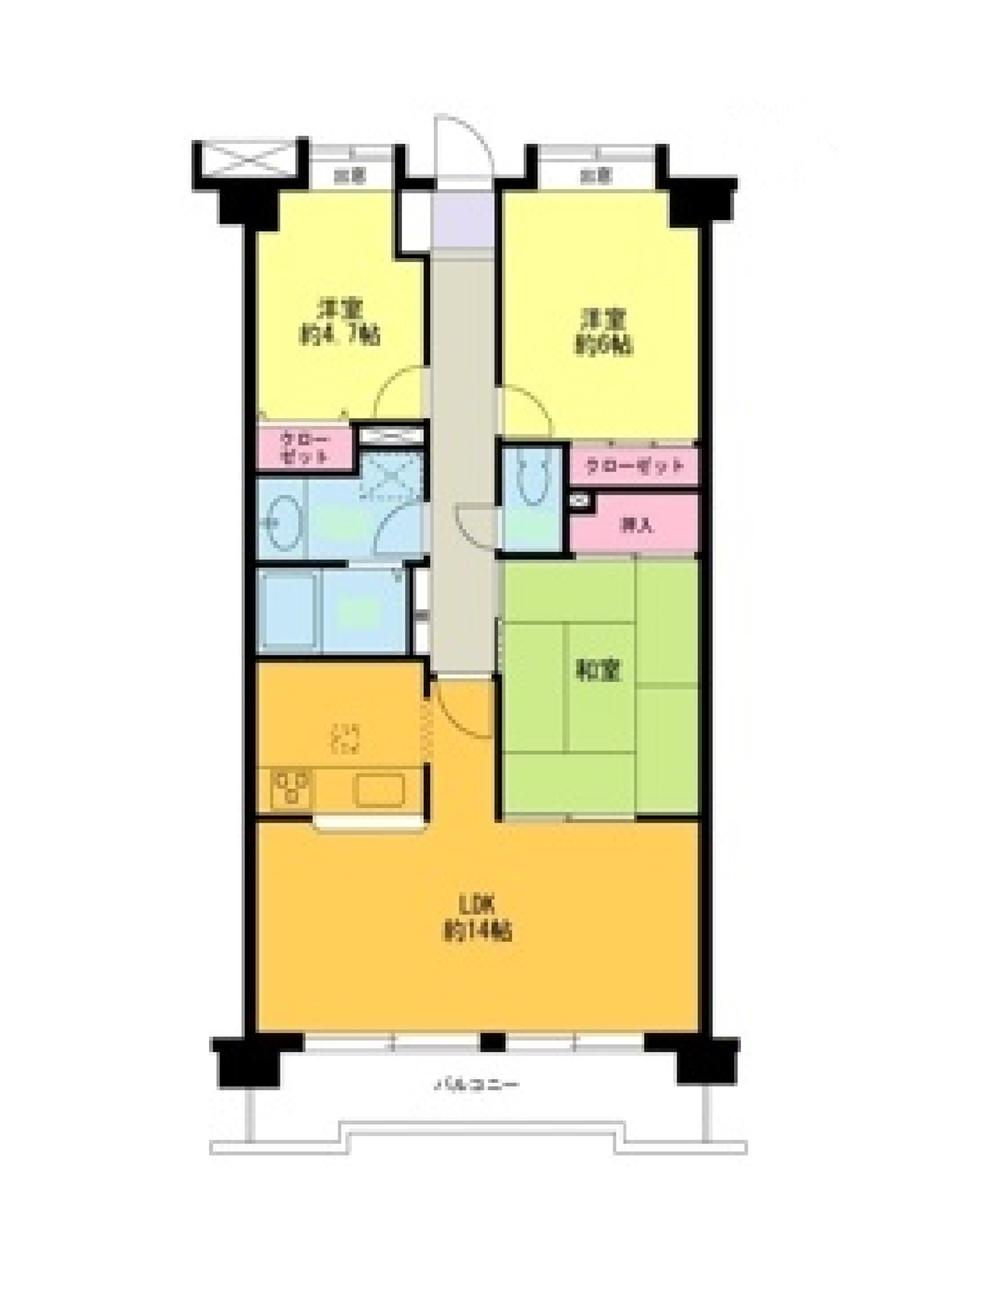 Floor plan. 3LDK, Price 22,800,000 yen, Occupied area 69.97 sq m , Balcony area 8.15 sq m 3LDK